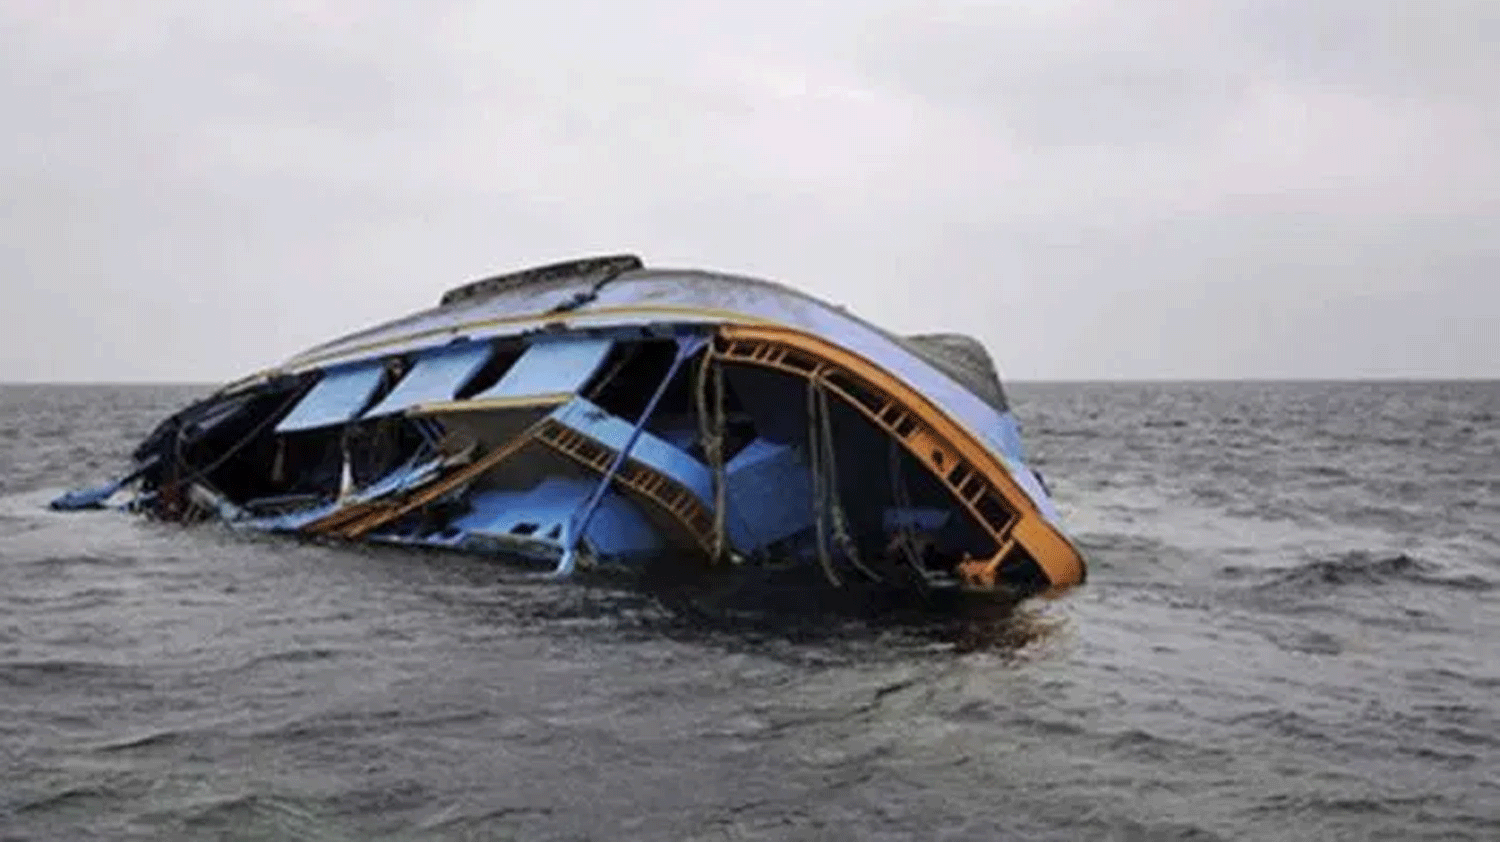 30 drown in Kebbi boat accident